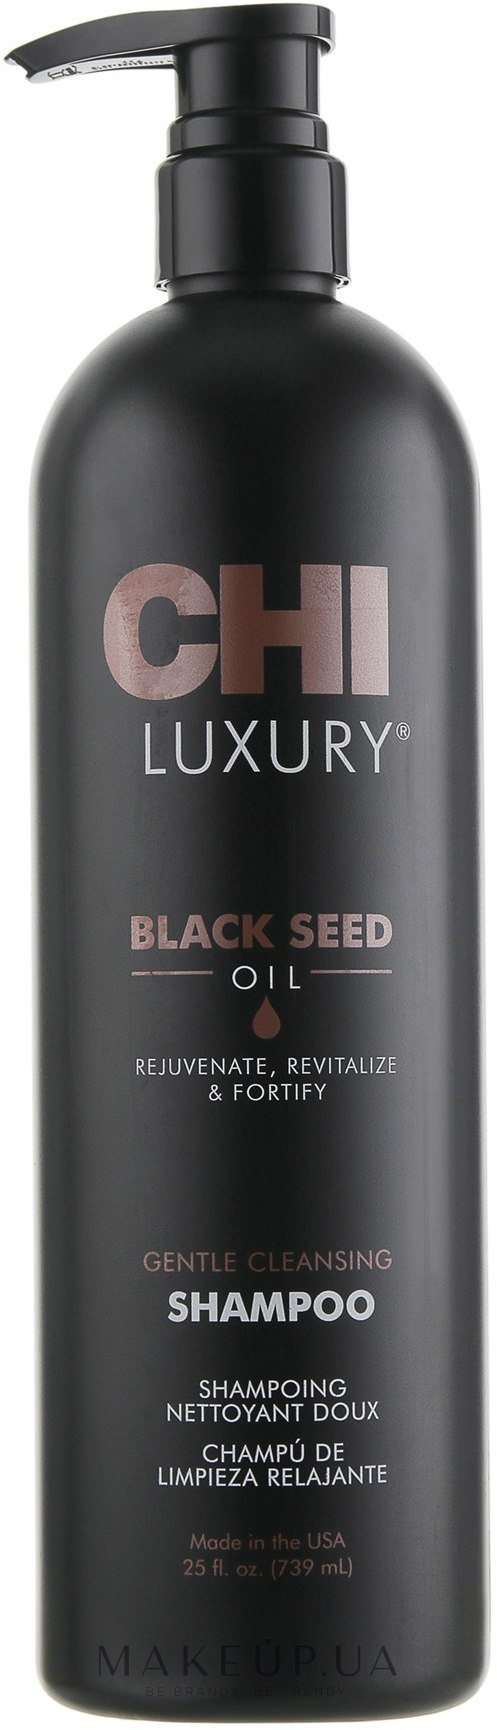 Ніжний очищувальний шампунь з олією чорного кмину - CHI Luxury Black Seed Oil Gentle Cleansing Shampoo — фото 739ml